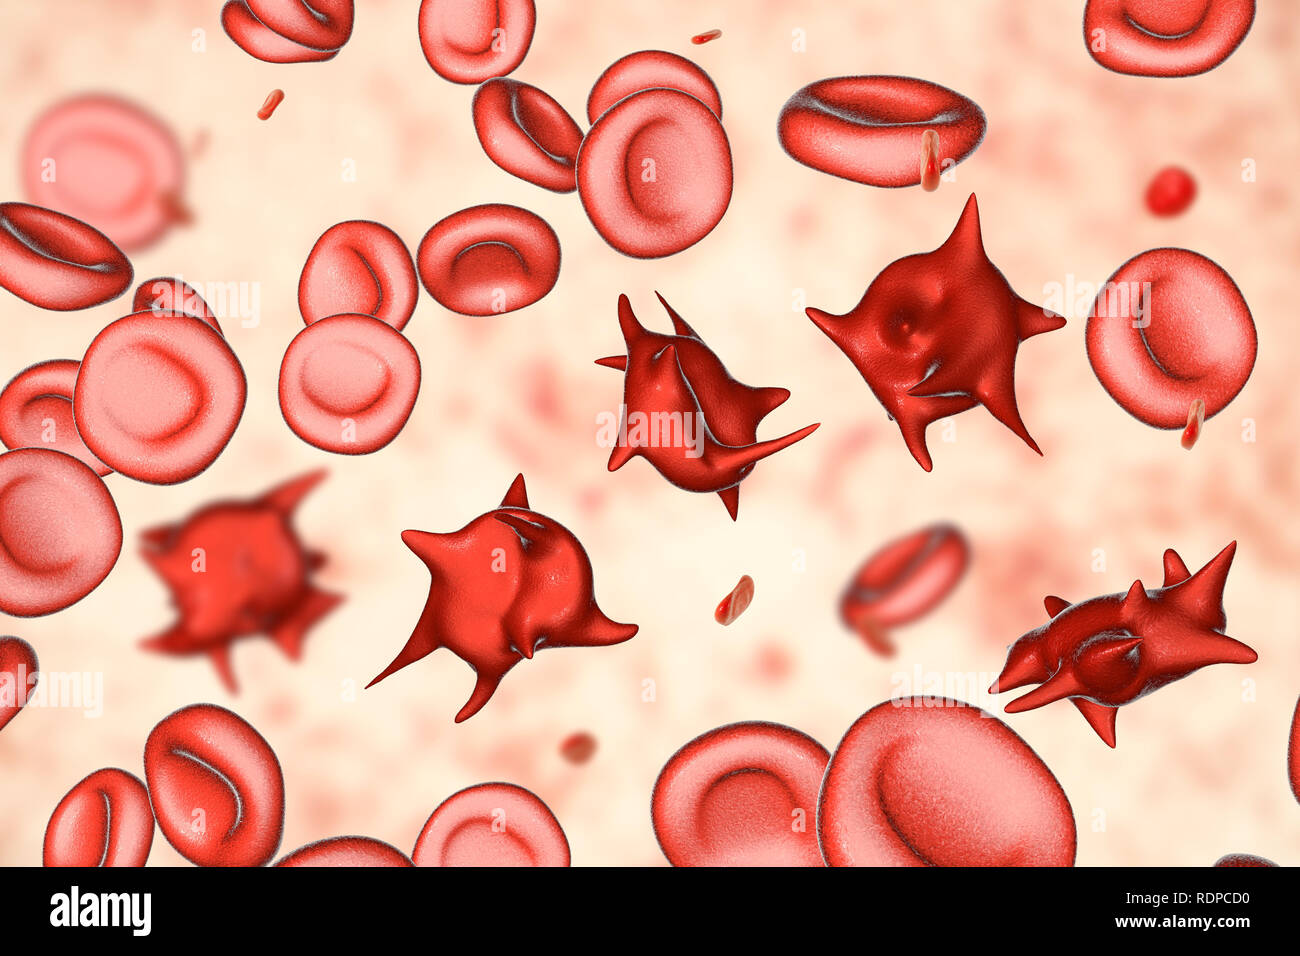 Acanthocytes. Illustrazione di una anormale cellule rosse del sangue noto come stimolare cellule o acanthocytes. Le cellule rosse del sangue con questo aspetto può verificarsi in associazione con una rara condizione chiamata abetalipoproteinemia, così come nelle malattie del fegato, Huntington acanthocytosis, ereditato diversi disturbi neurologici, anoressia nervosa, ipotiroidismo, alcolismo e altri disturbi. Le Cellule deformate sono distrutti prematuramente, principalmente nella milza, causando anemia. Foto Stock